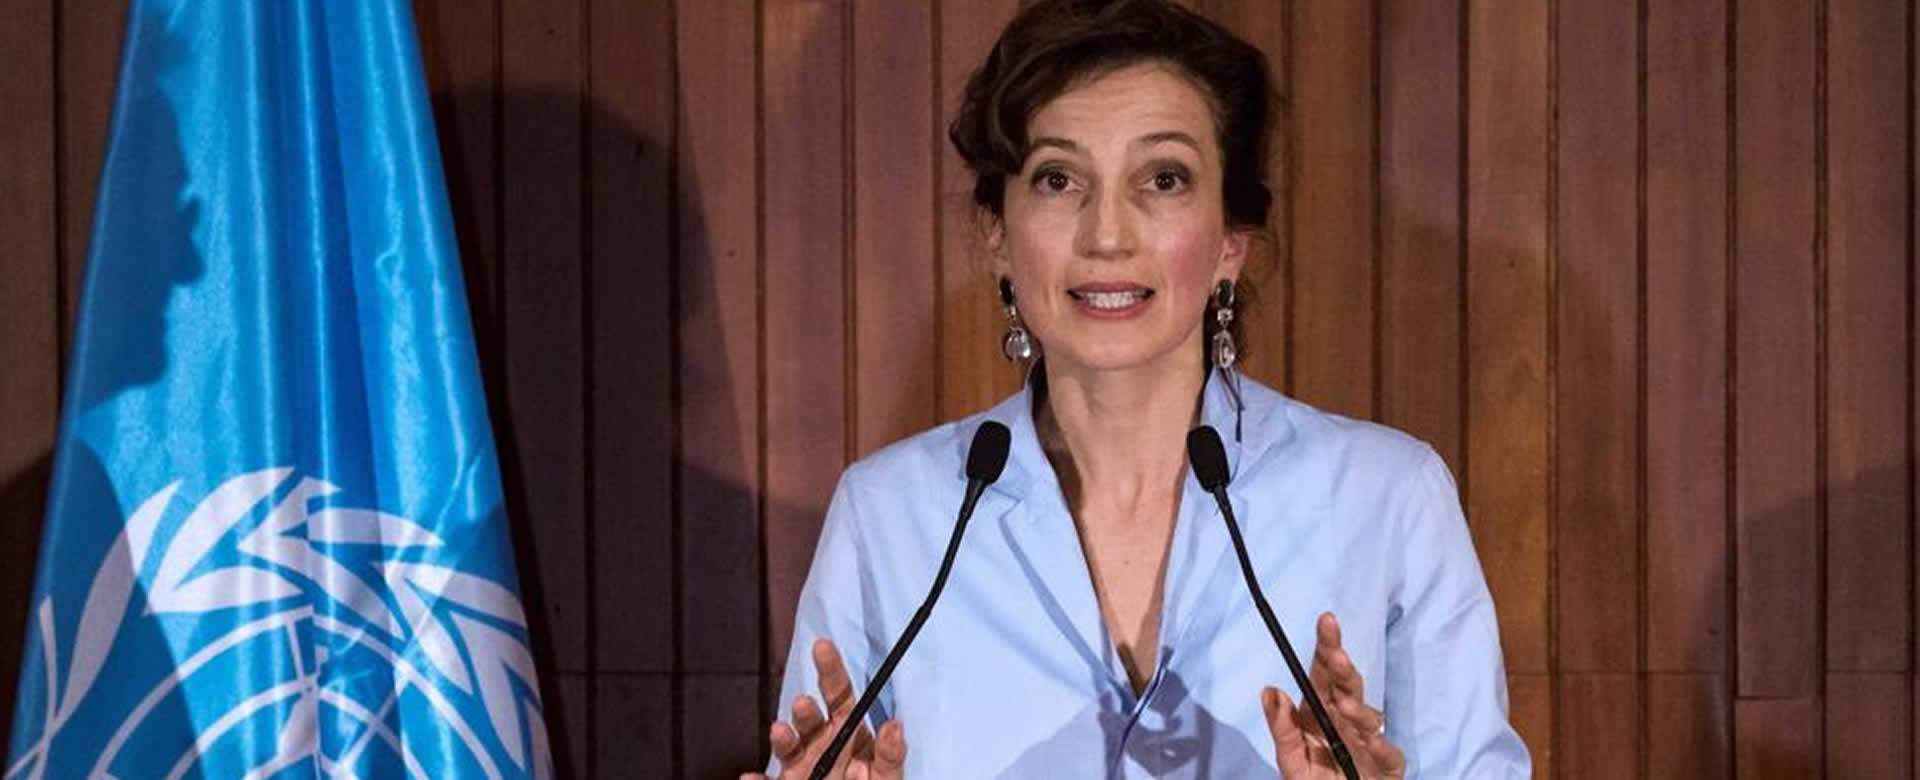 Audrey Azoulay, electa como nueva Directora General de la UNESCO